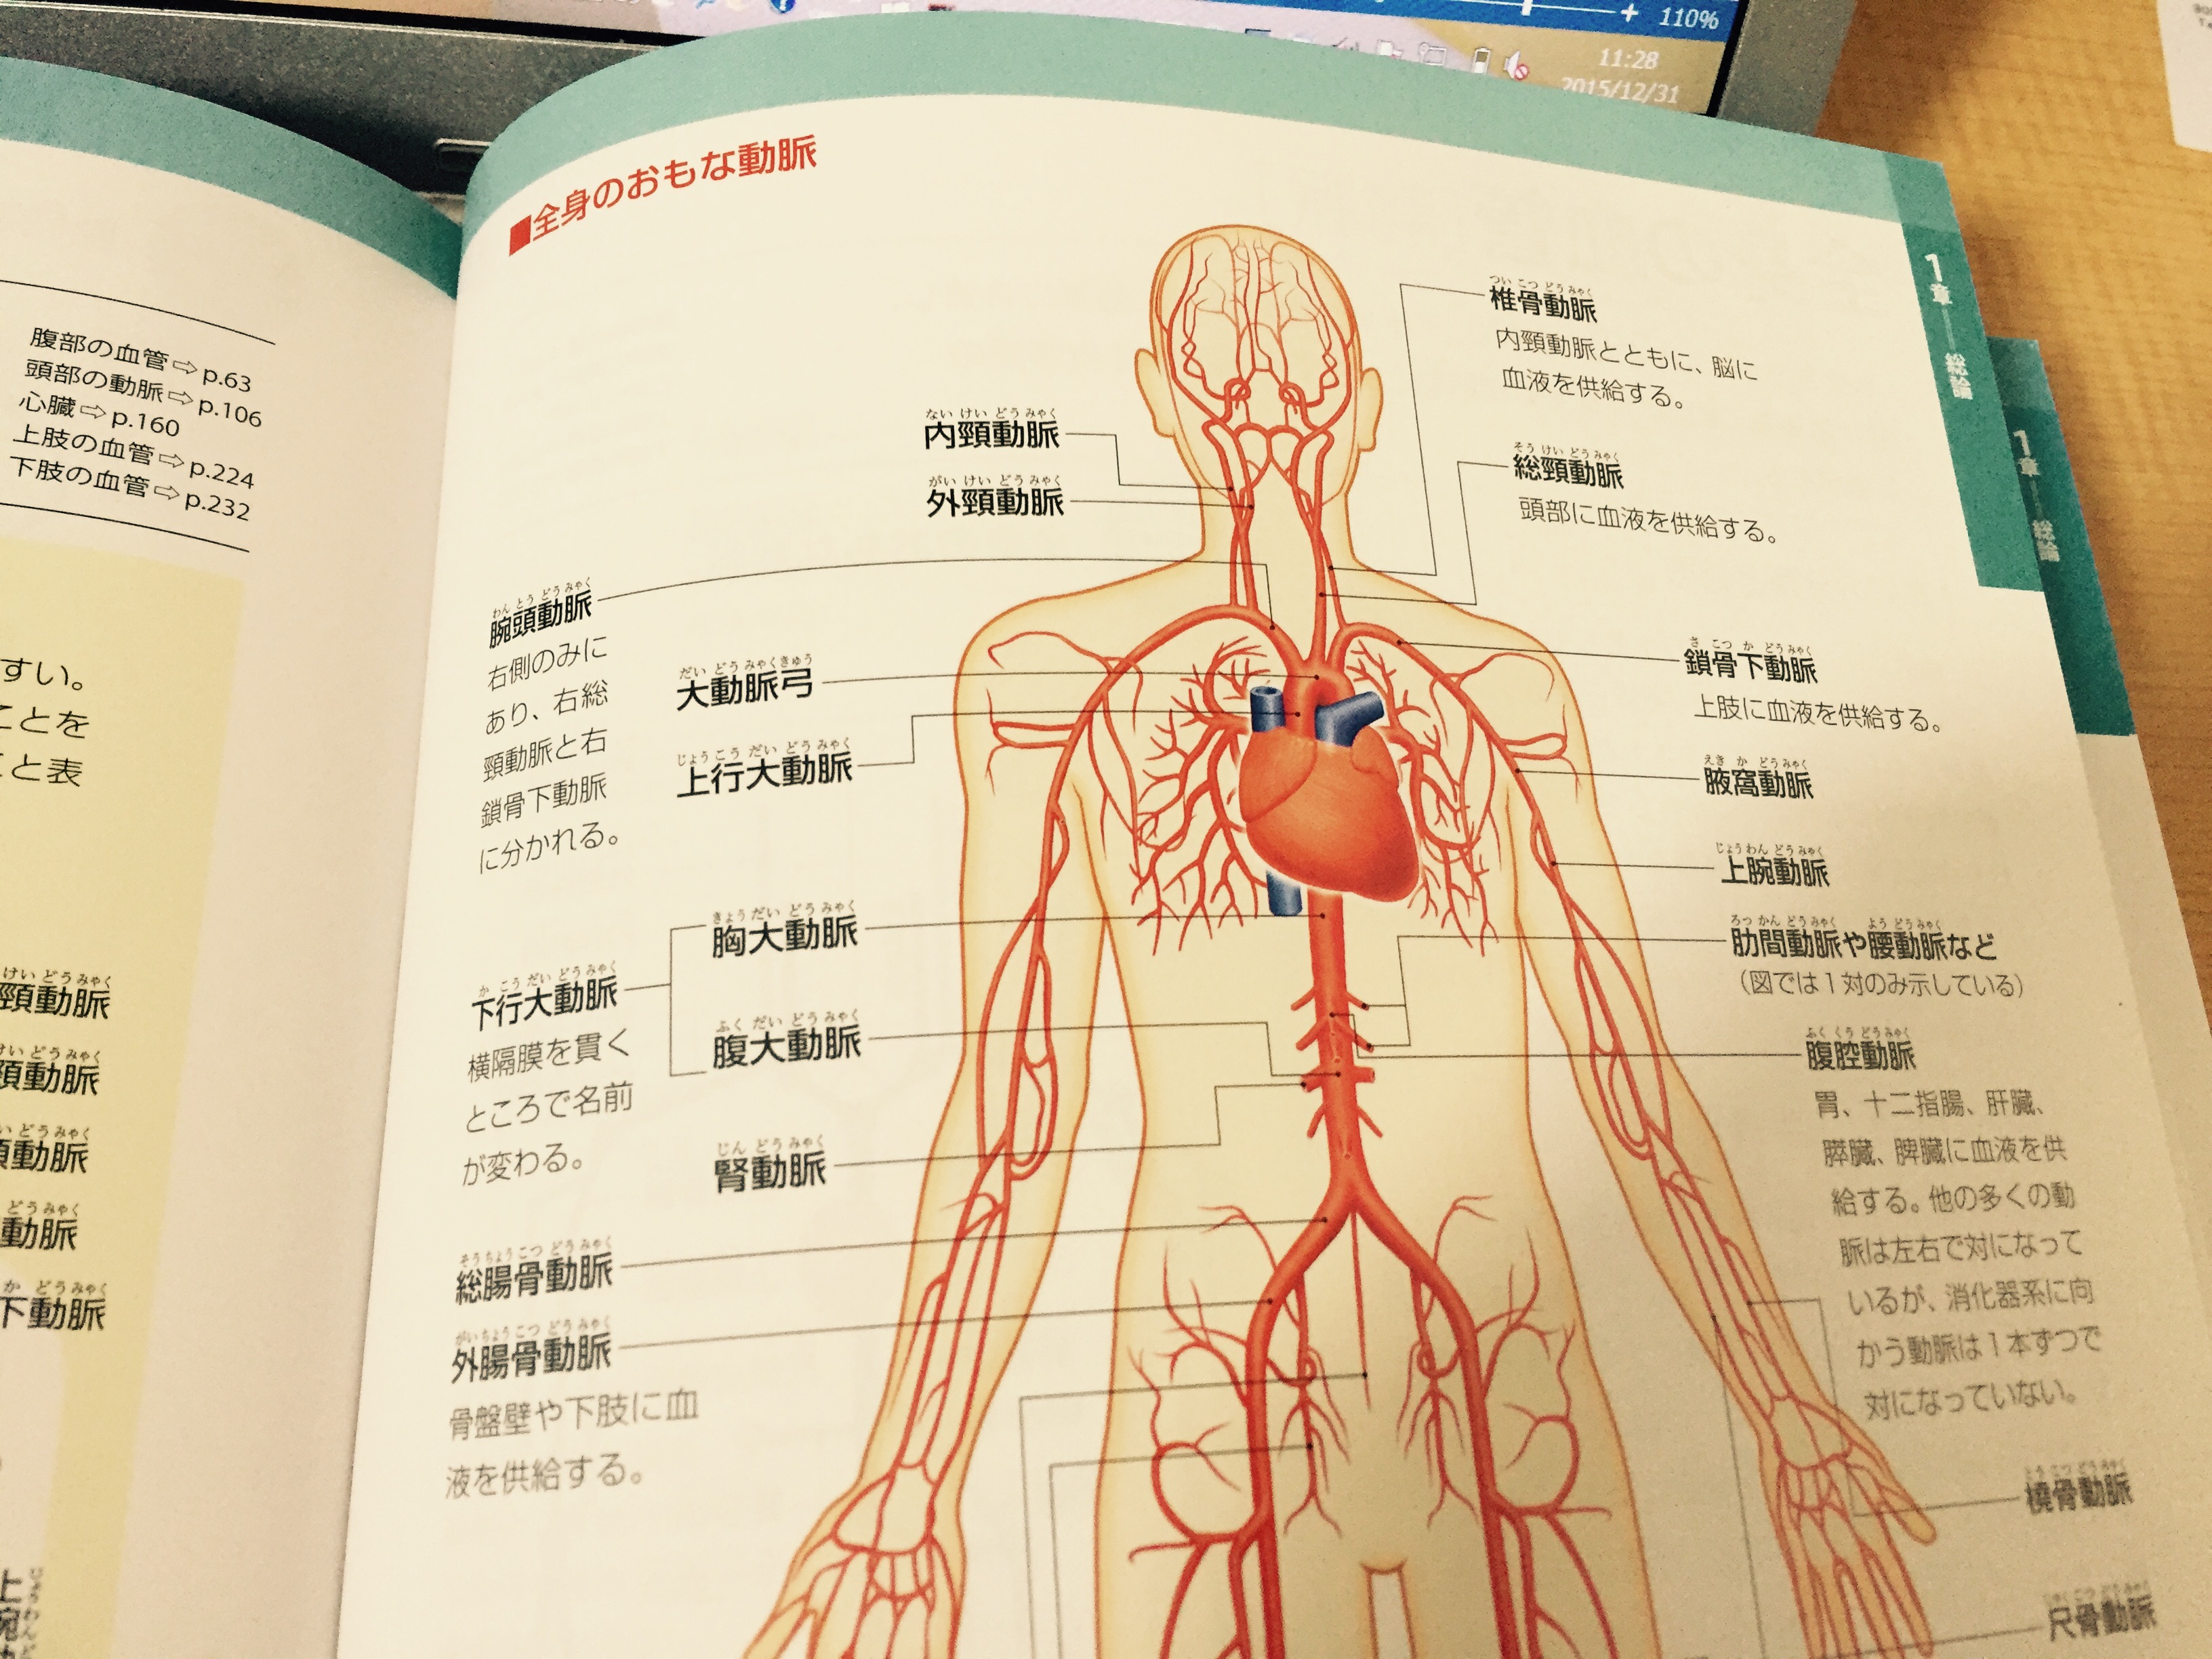 心臓を出入りする血管の太さにも 解剖実習アカデミー